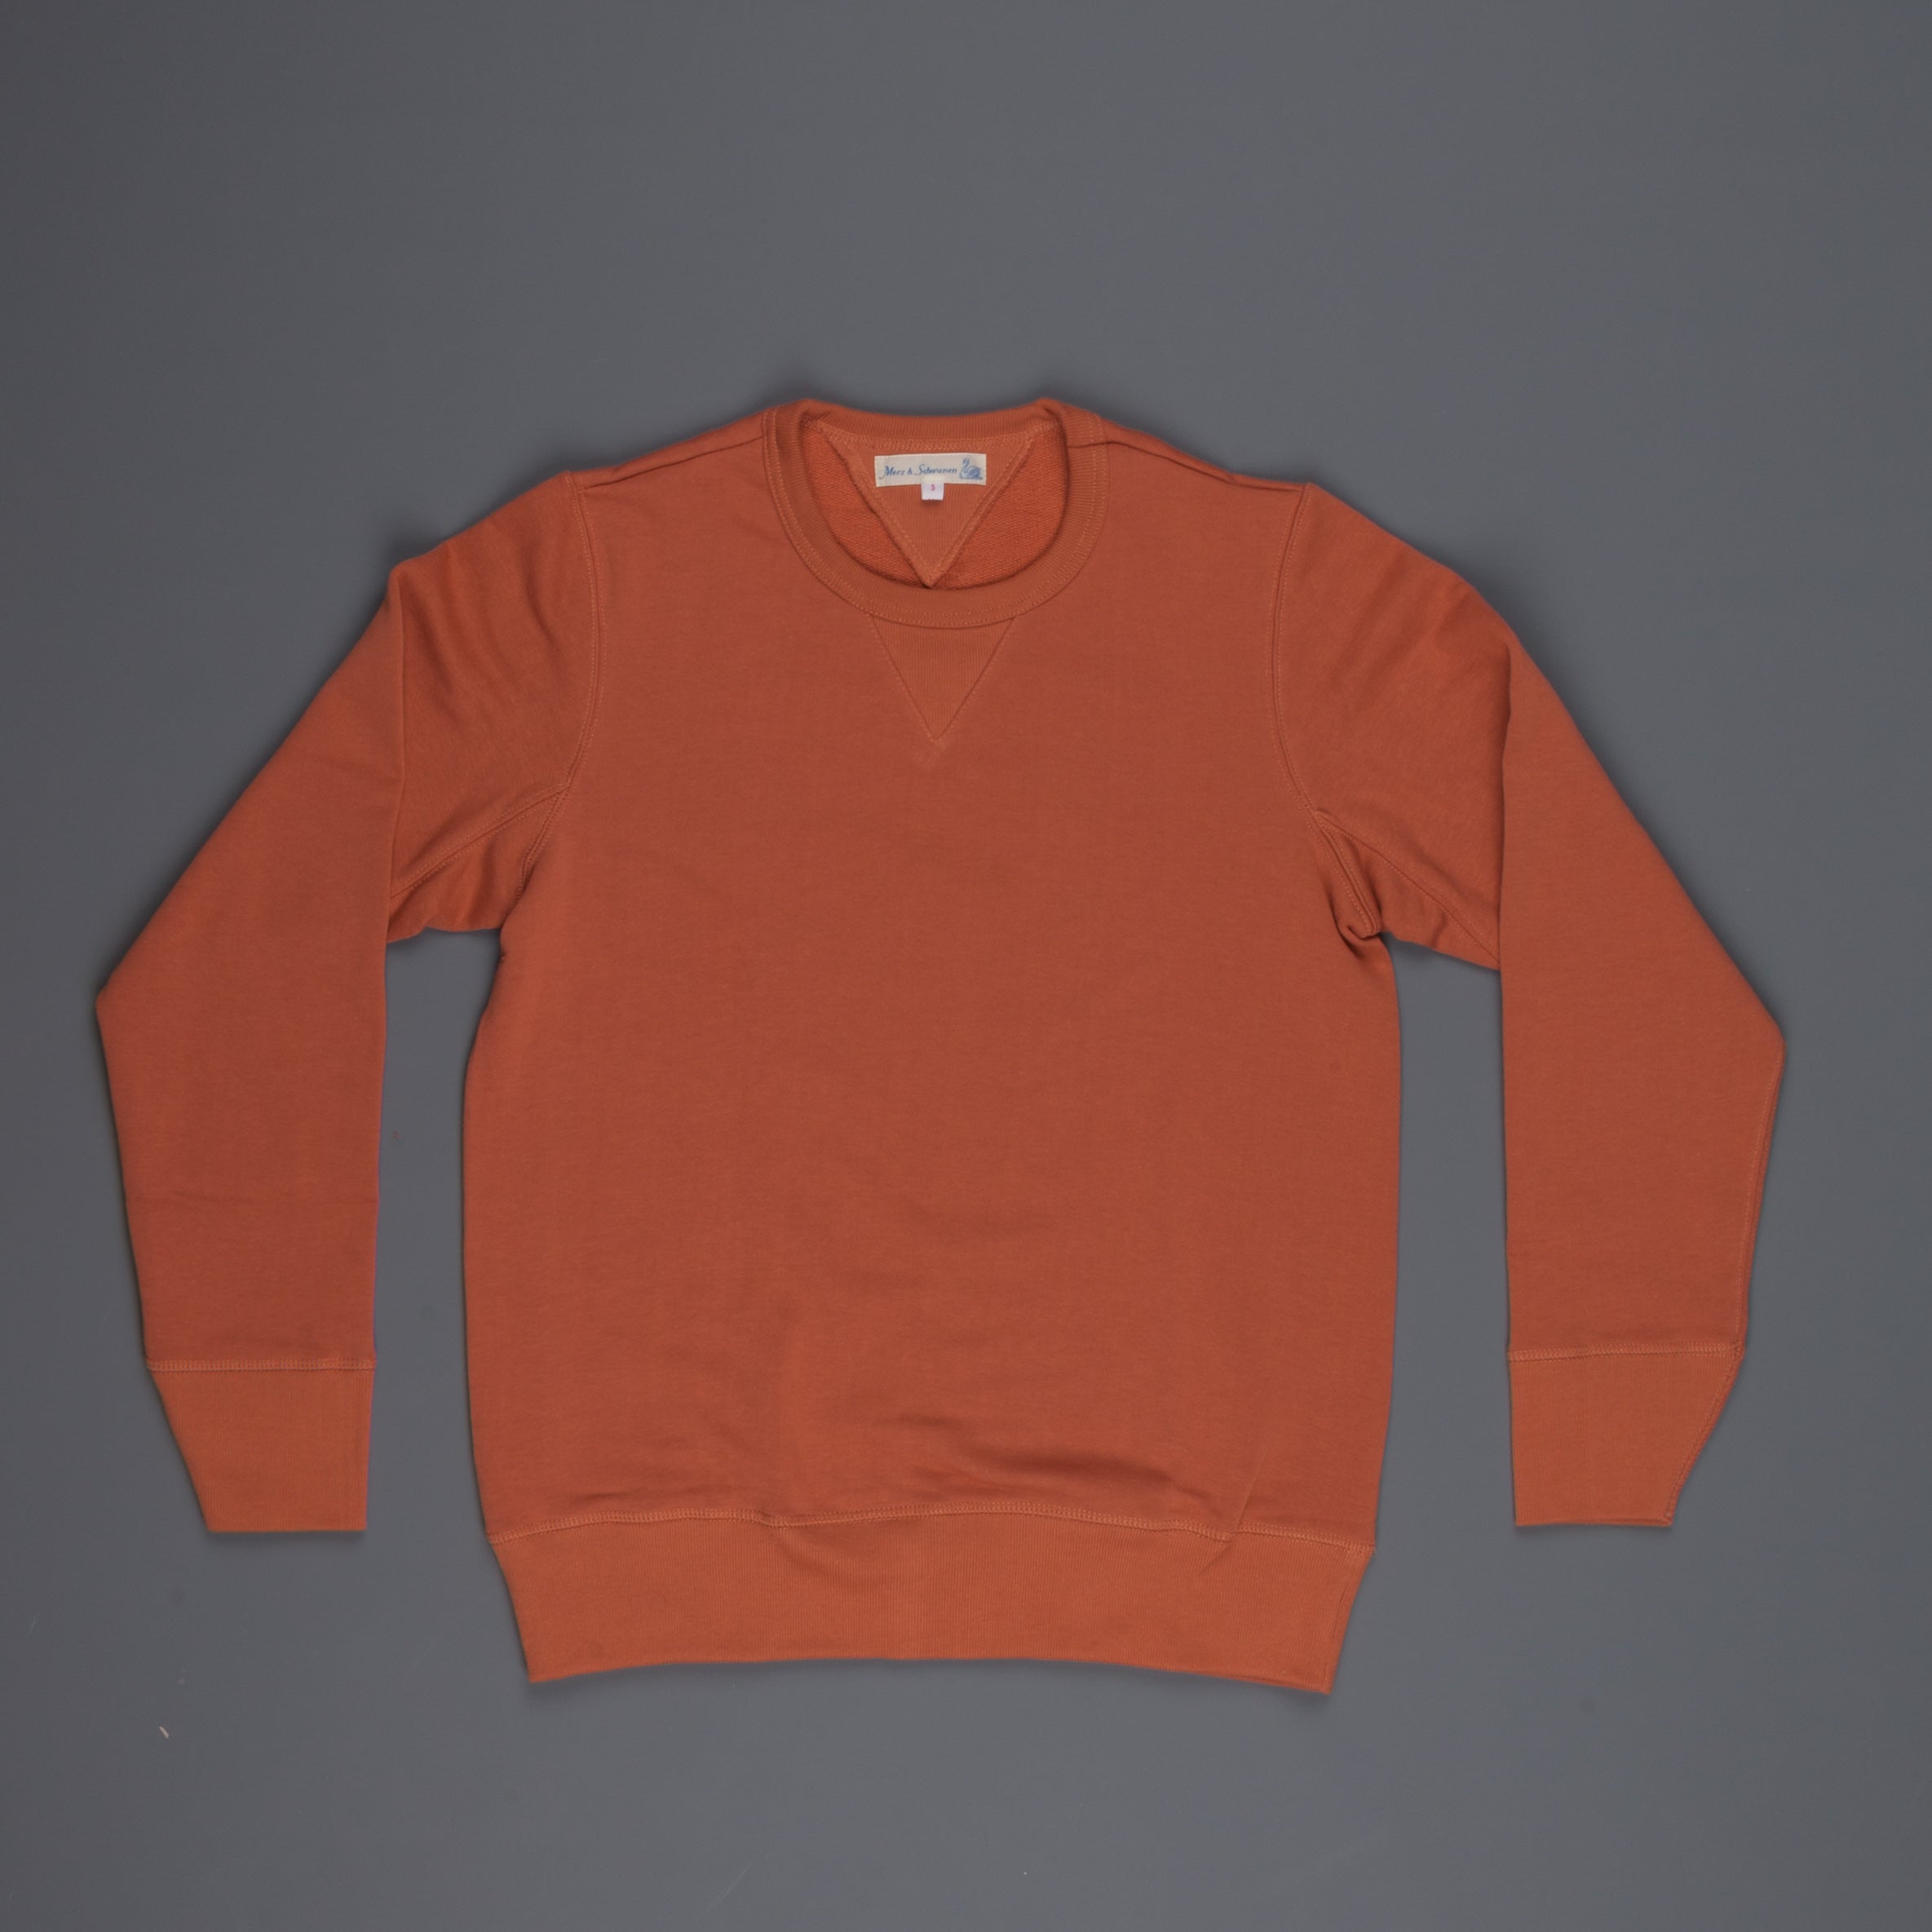 Merz B Schwanen 346 Fleece sweater light rust